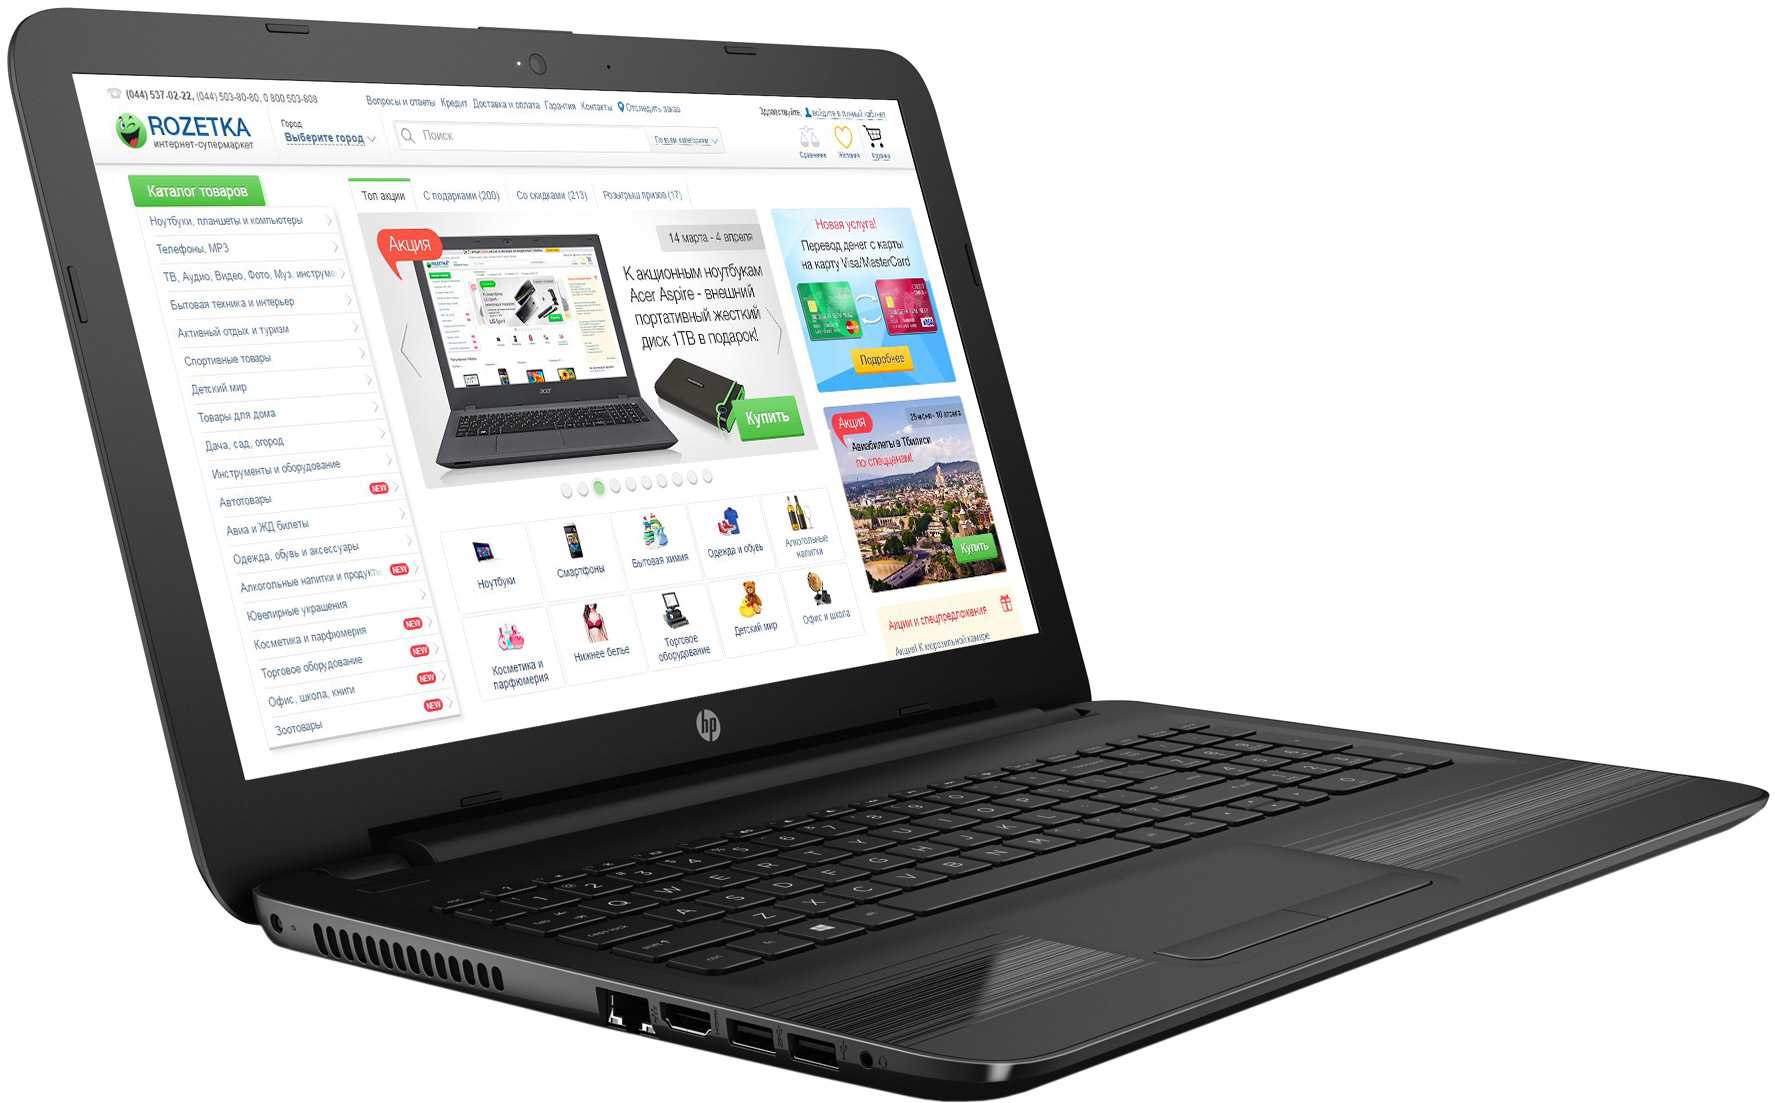 Ноутбук HP 15-bs100ur (2VZ79EA) - подробные характеристики обзоры видео фото Цены в интернет-магазинах где можно купить ноутбук HP 15-bs100ur (2VZ79EA)